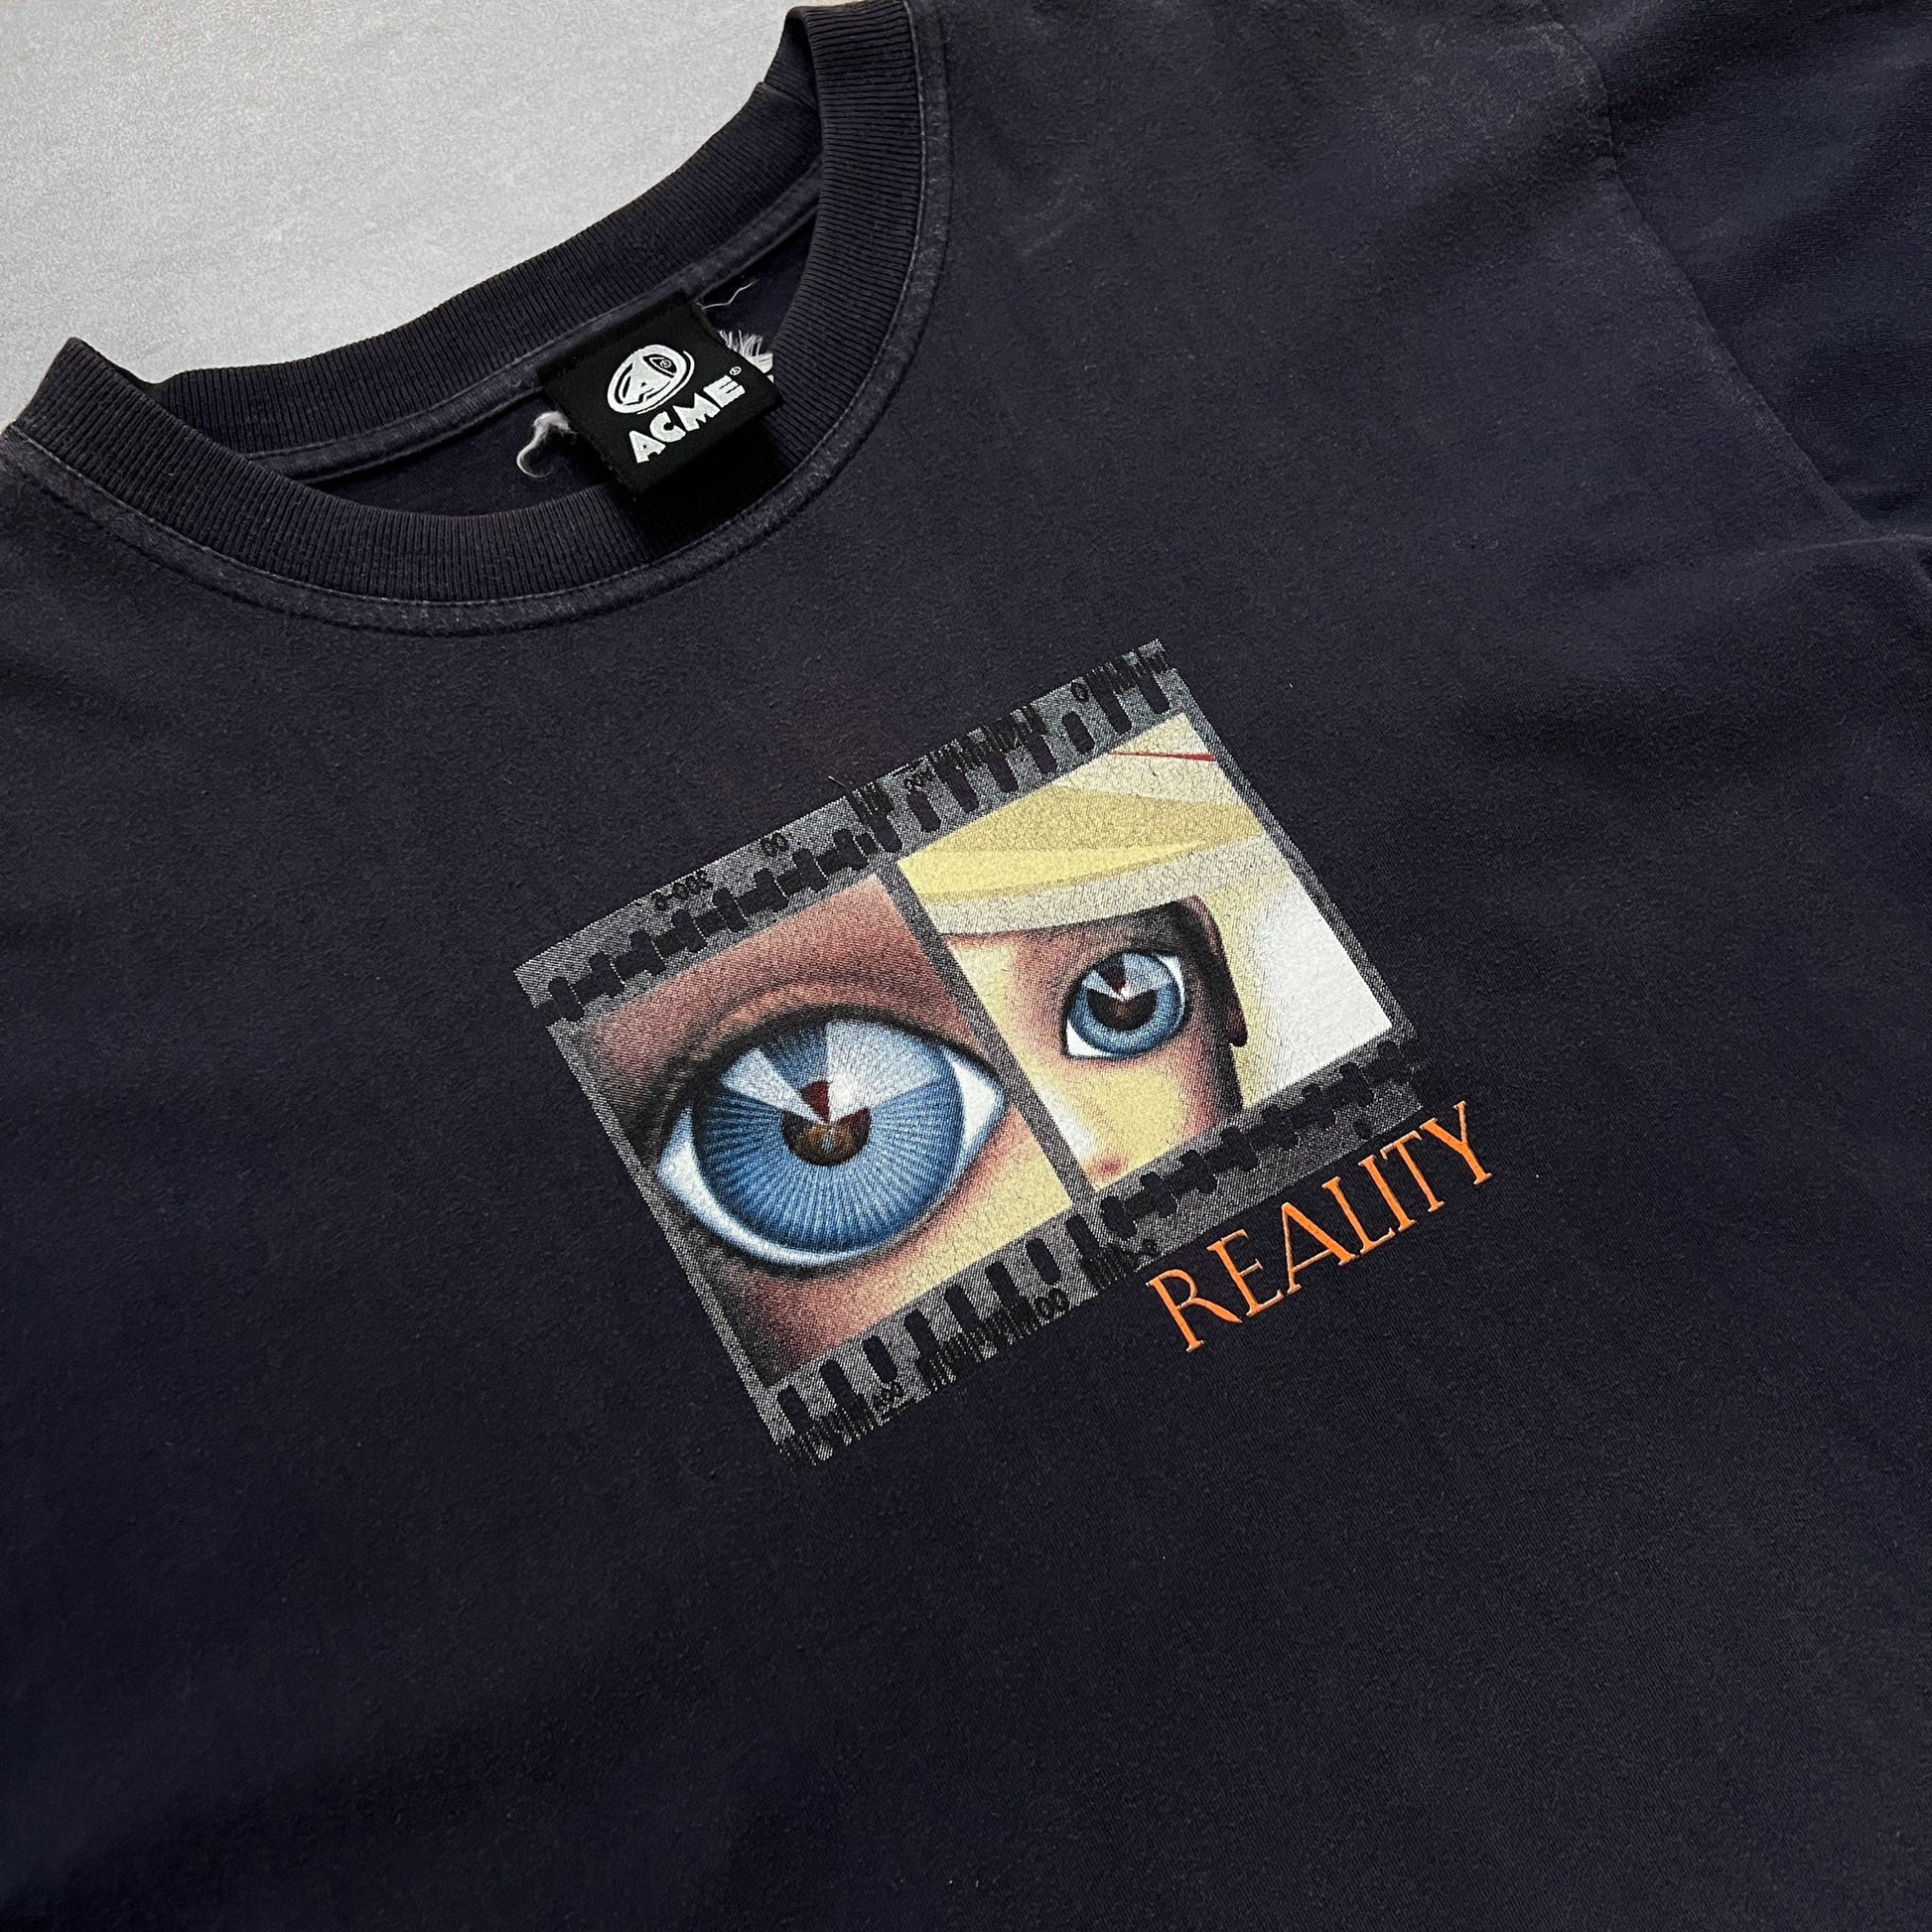 2000s Acme "Reality Tour" David Bowie T Shirt - M sullivansvintage